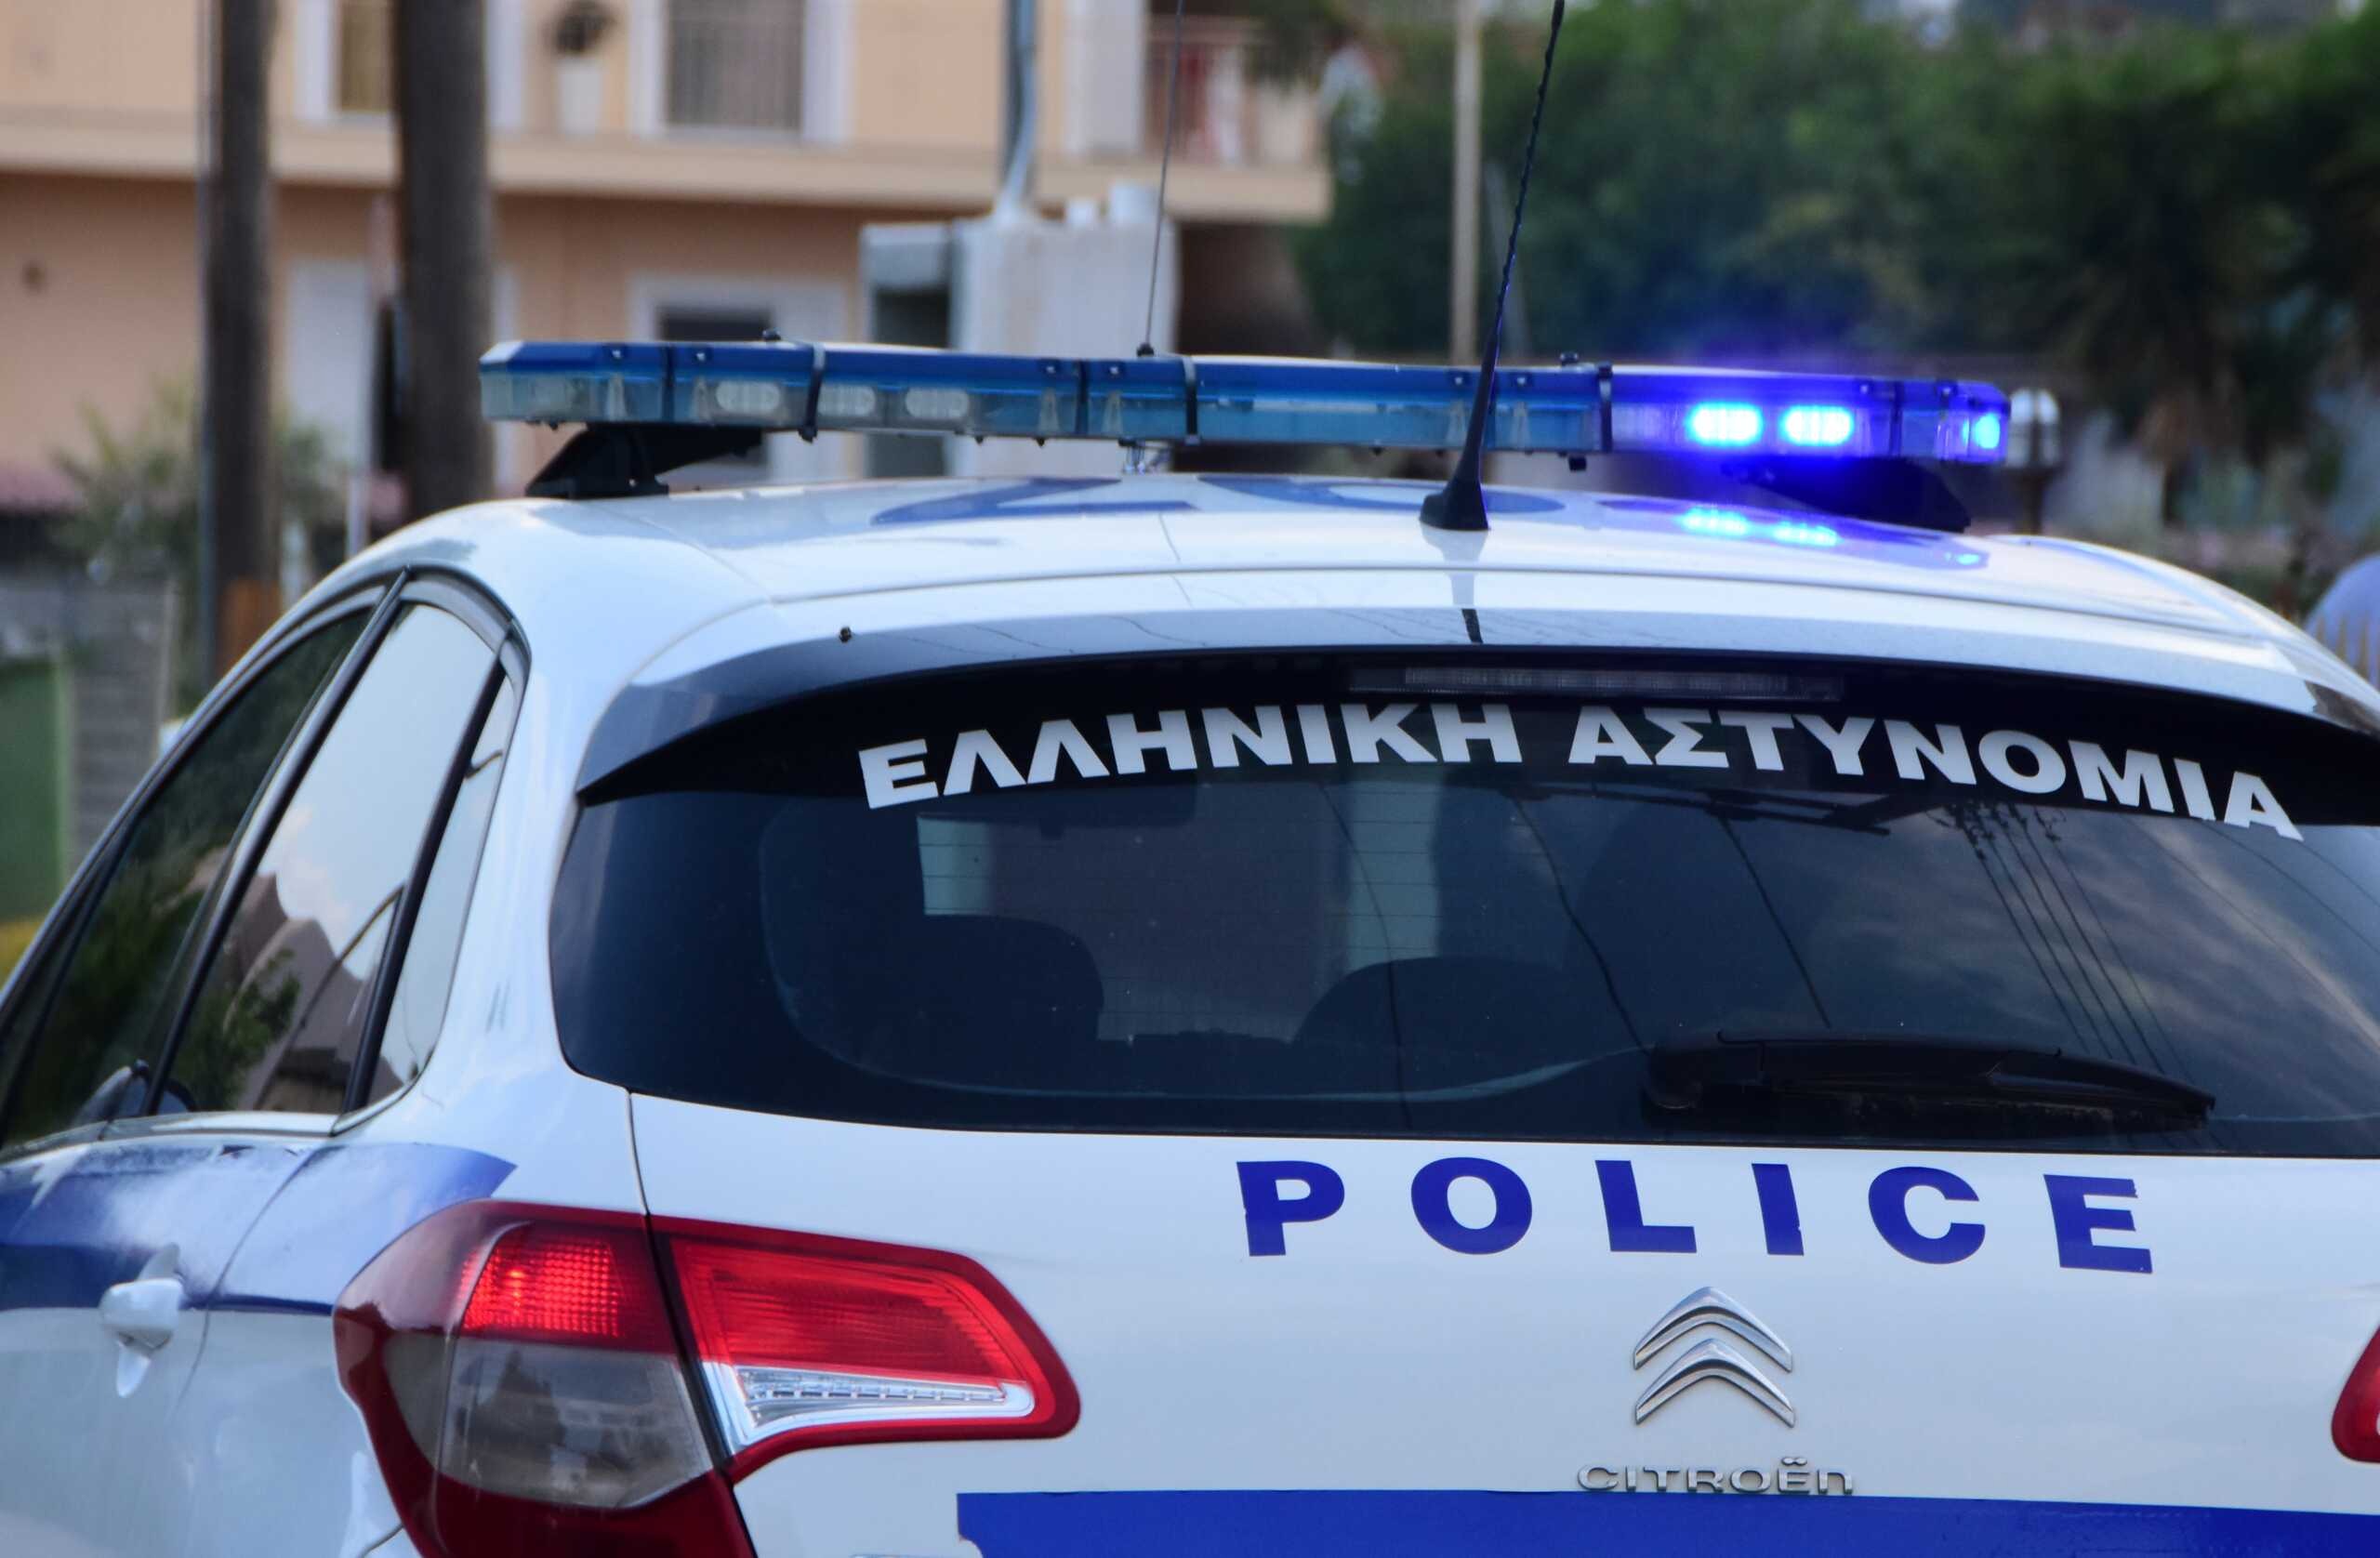 Θεσσαλονίκη: Συνελήφθησαν δύο ανήλικοι για ληστεία σε μίνι μάρκετ με λεία 1.300 ευρώ